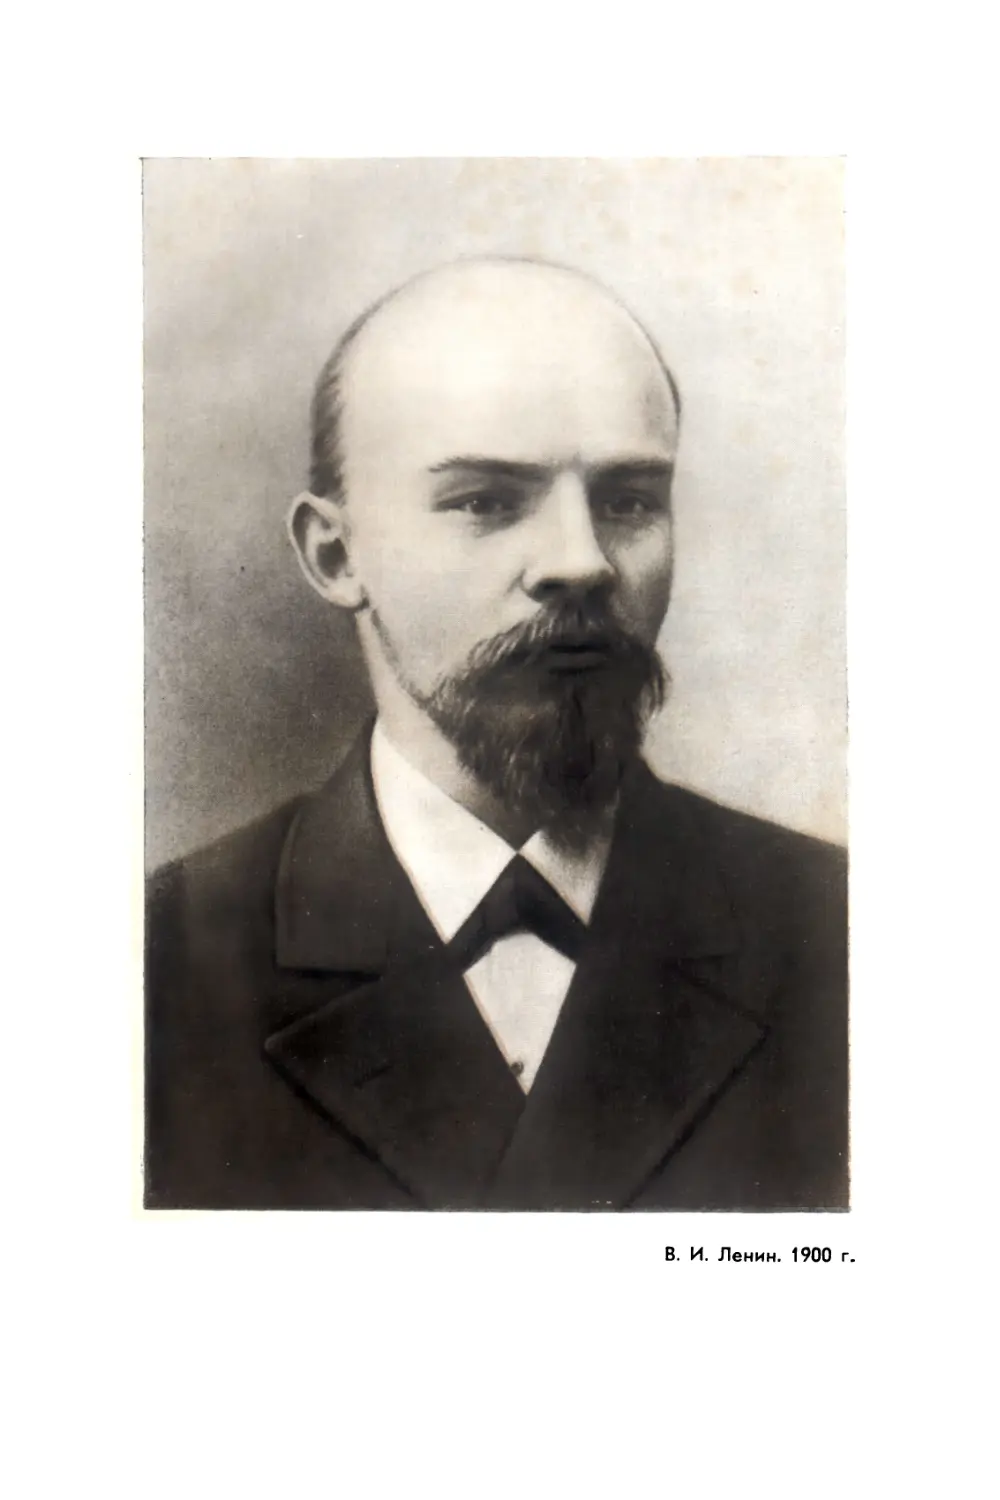 Вклейка. В. И. Ленин. 1900 г. Фото. Центральный музей В И. Ленина